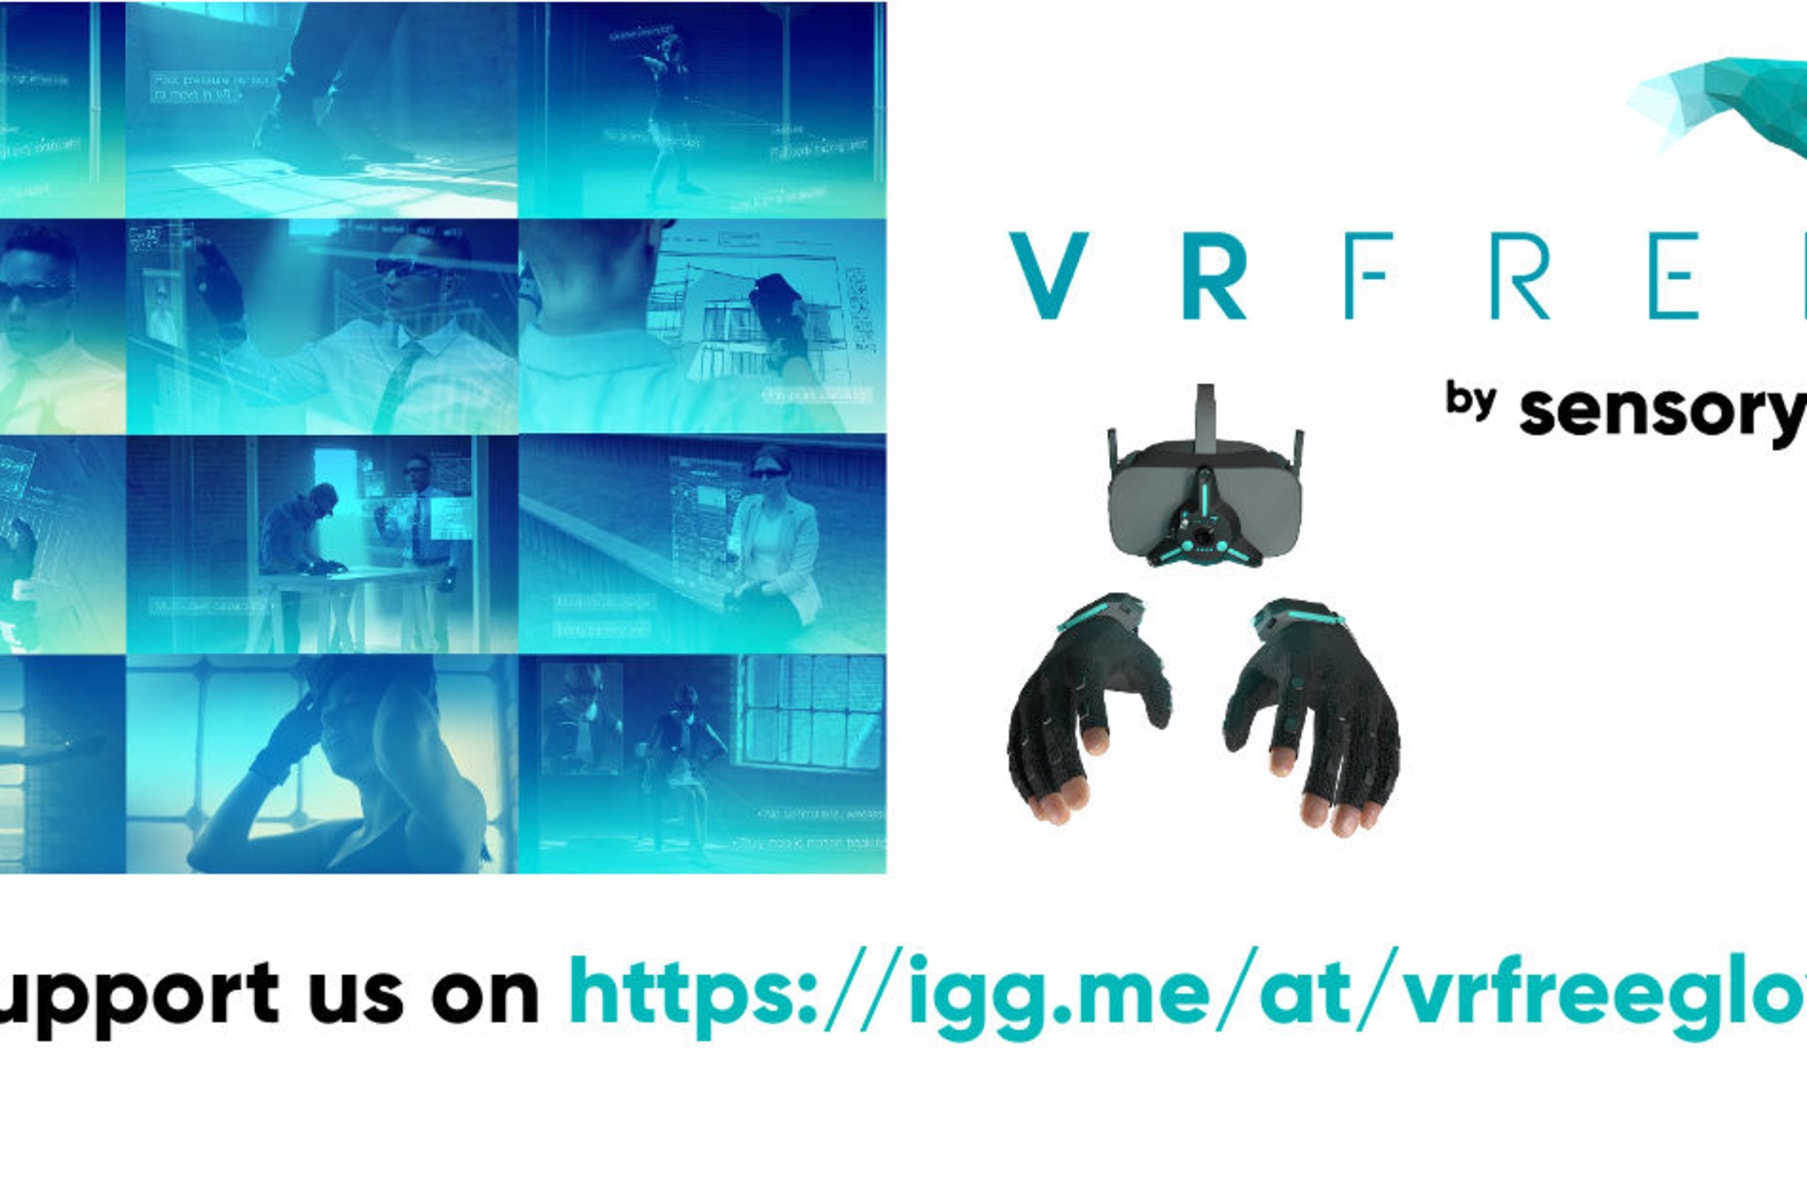 VRfree glove system | Indiegogo